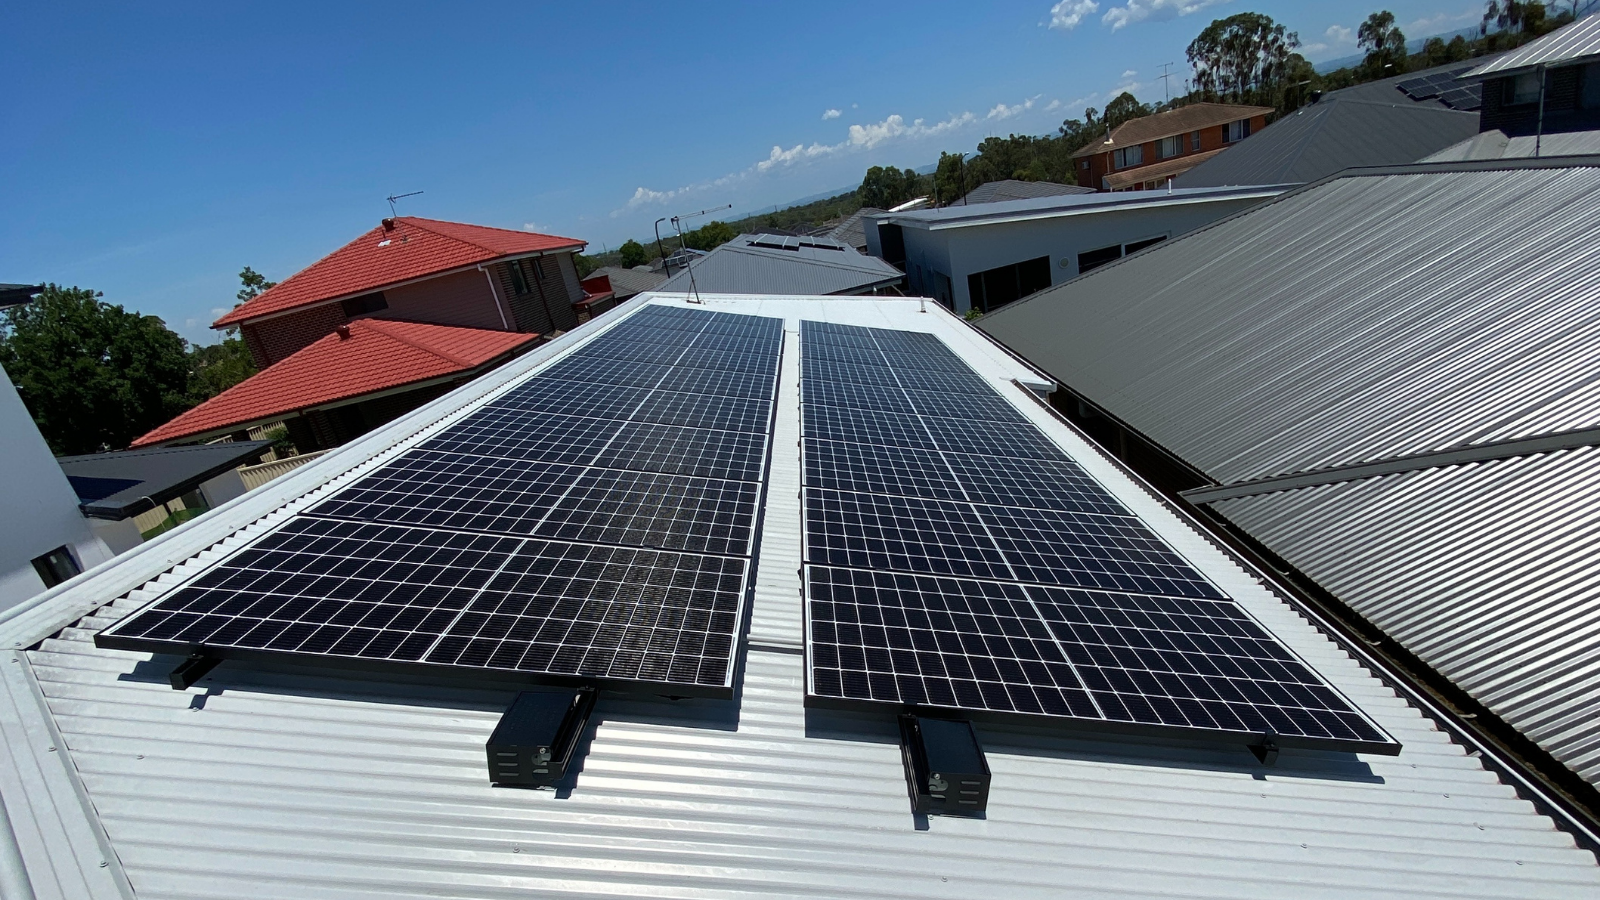 Marsden Park solar panel system installation